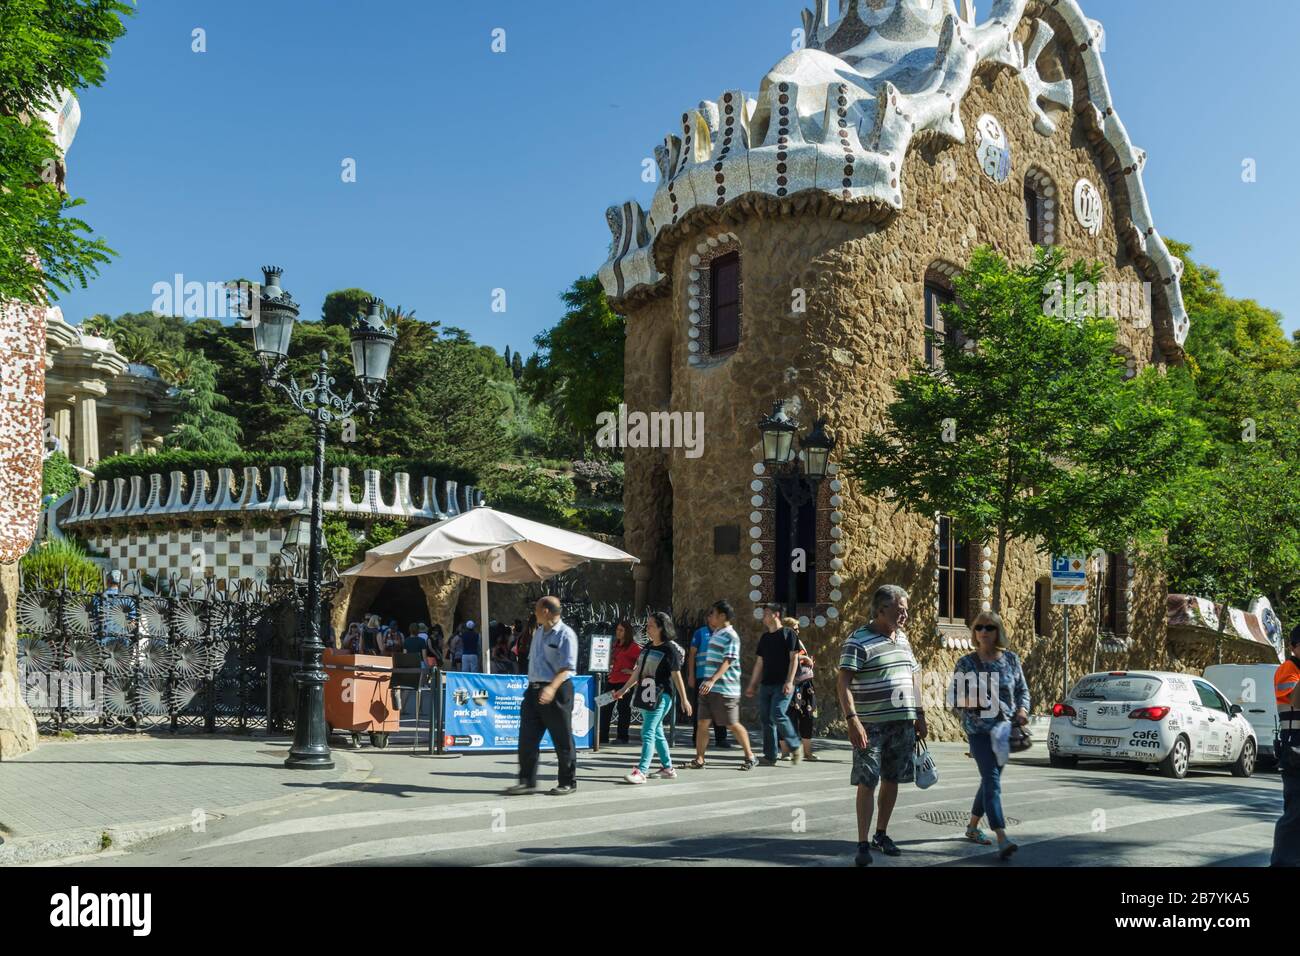 BARCELONA, SPANIEN - 22. JUNI 2016: Menschen in der Nähe des Haupteingangs des Parks Guell. Grüner Park mit Gaudi-Museum und Panoramablick. Von Architekt Gaudi. Stockfoto